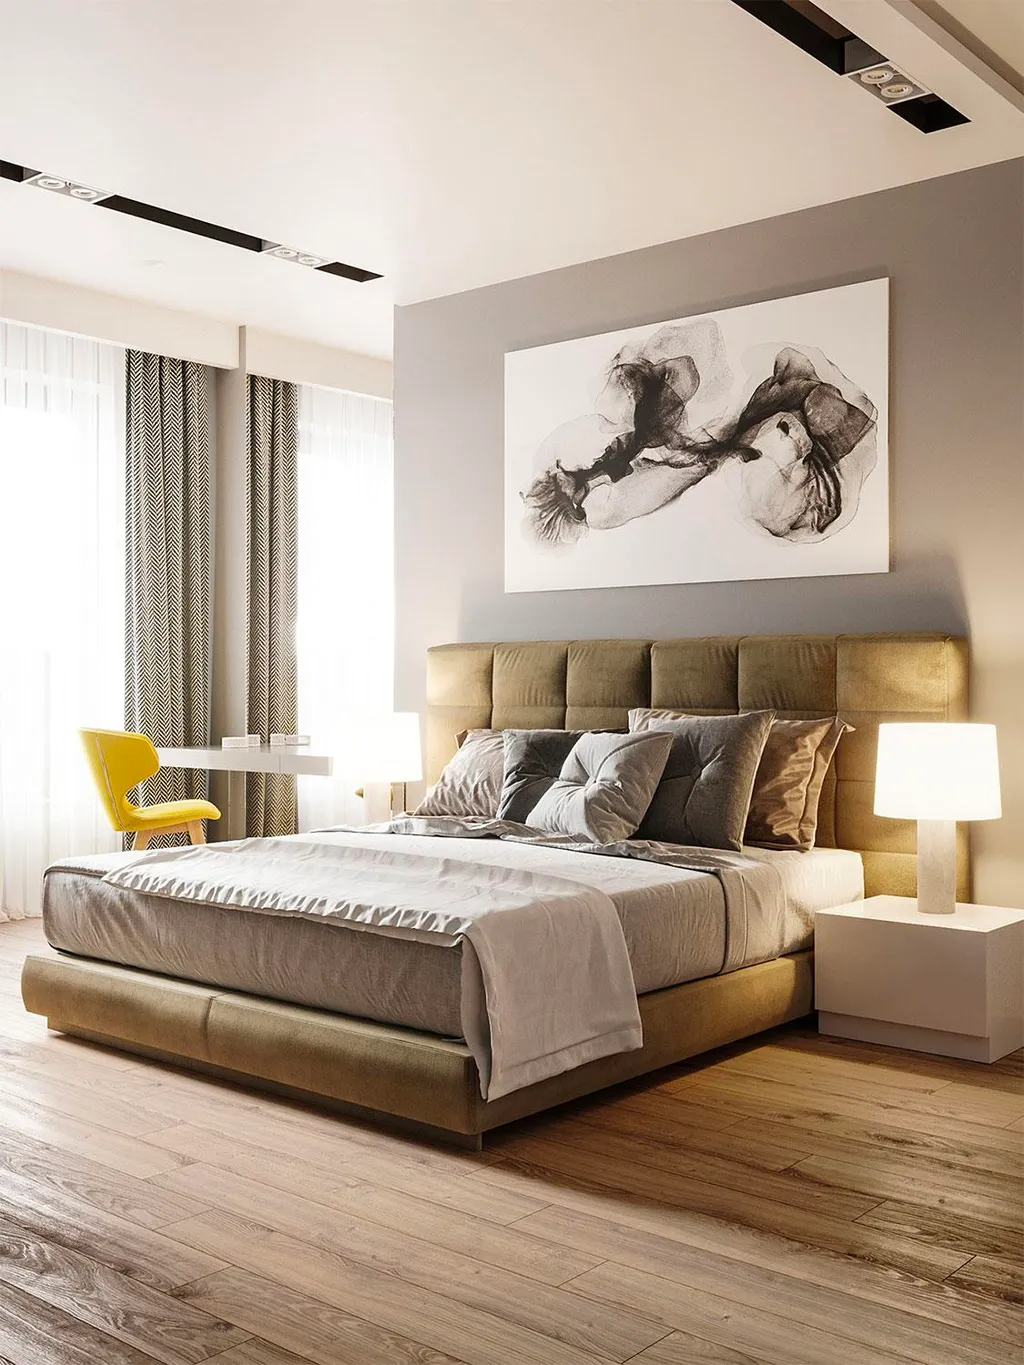 Phòng ngủ master trong thiết kế chung cư phong cách tối giản được trang trí bằng những món đồ nội thất đơn giản để tạo không gian trống tối đa cho căn phòng